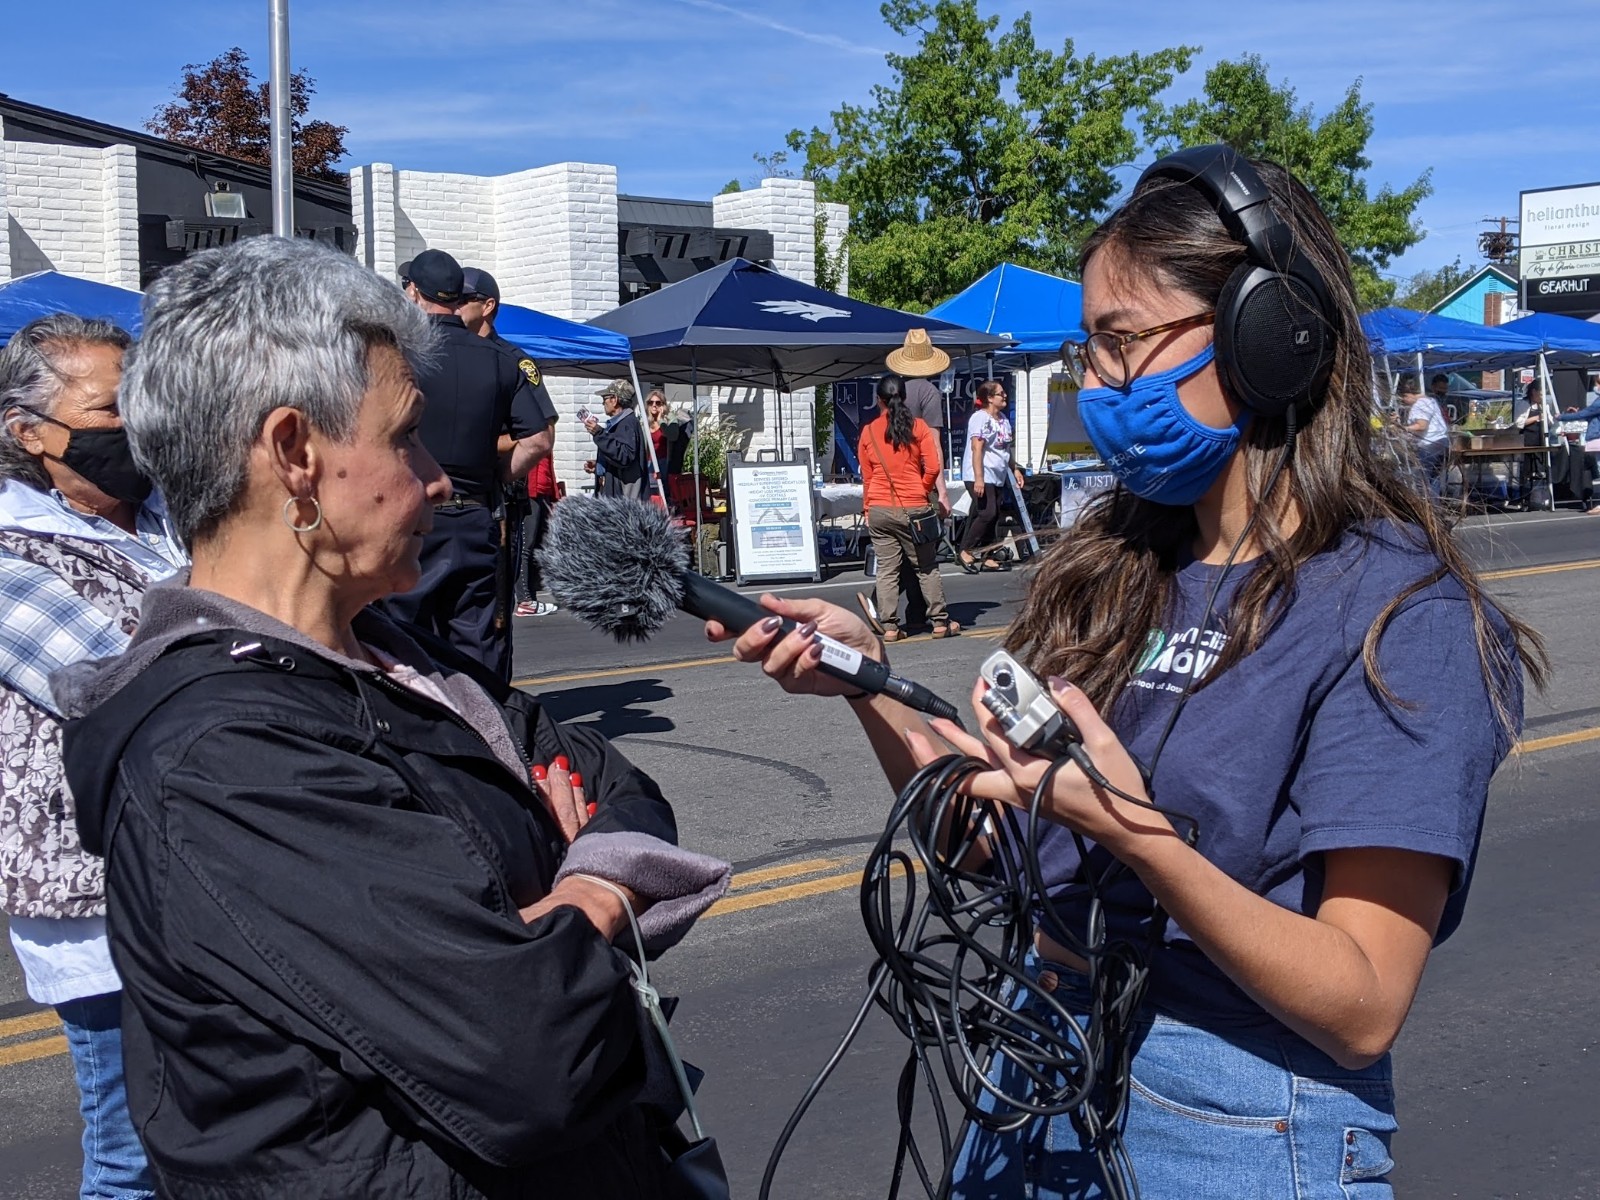 Una reportera con cubreboca, micrófono, grabadora y audífonos, entrevista a una señora en medio de un festival callejero.